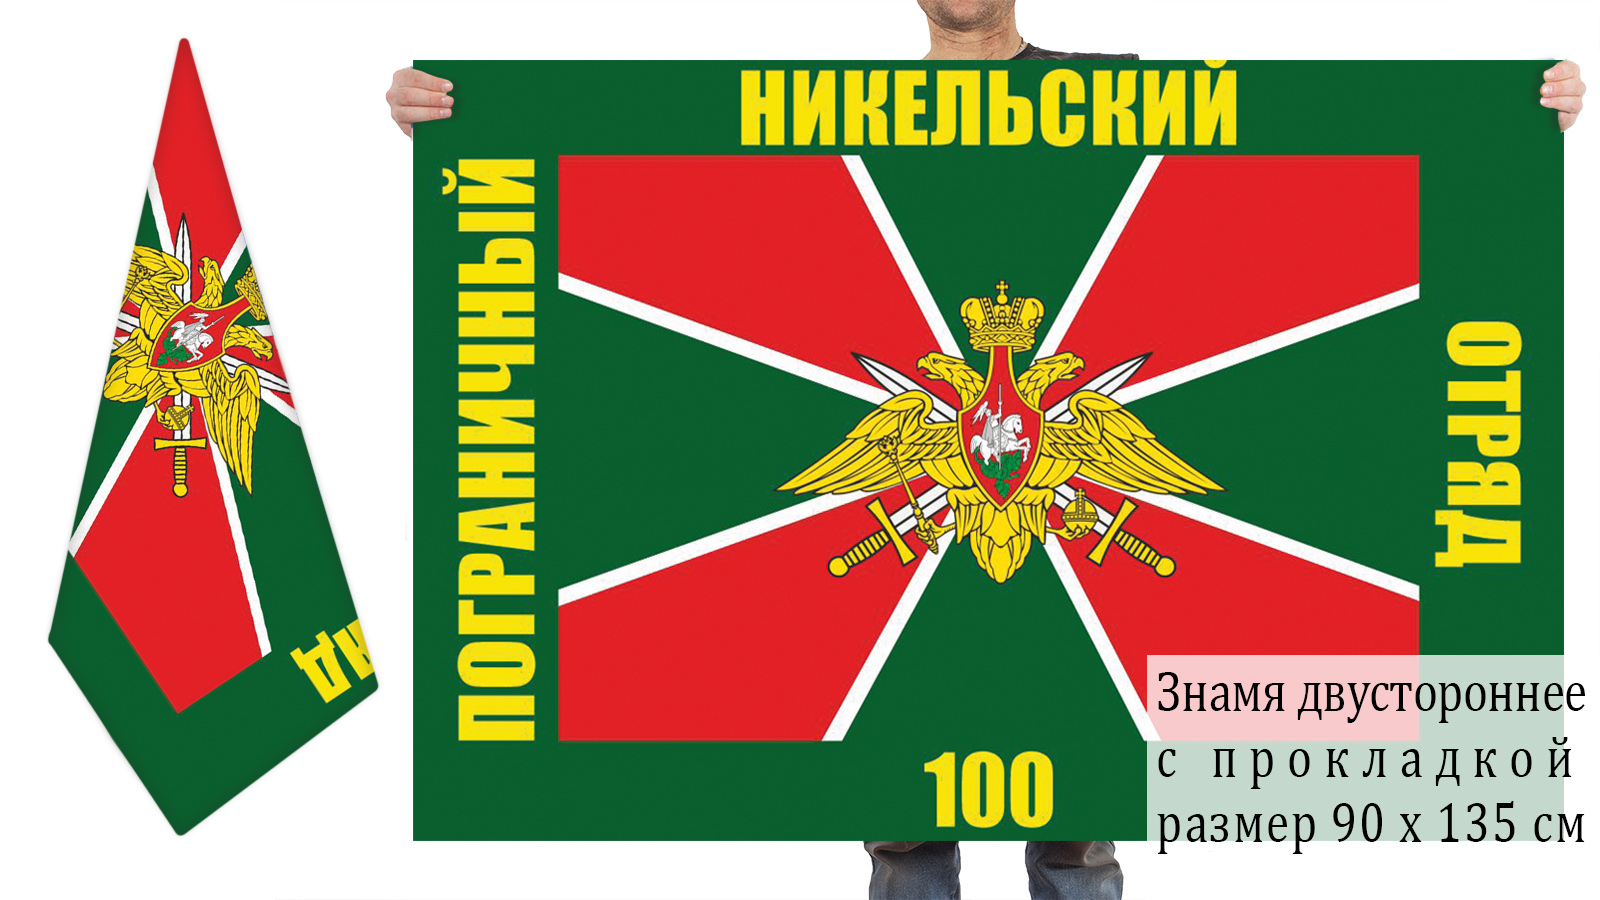 Двусторонний флаг 100 погранотряда